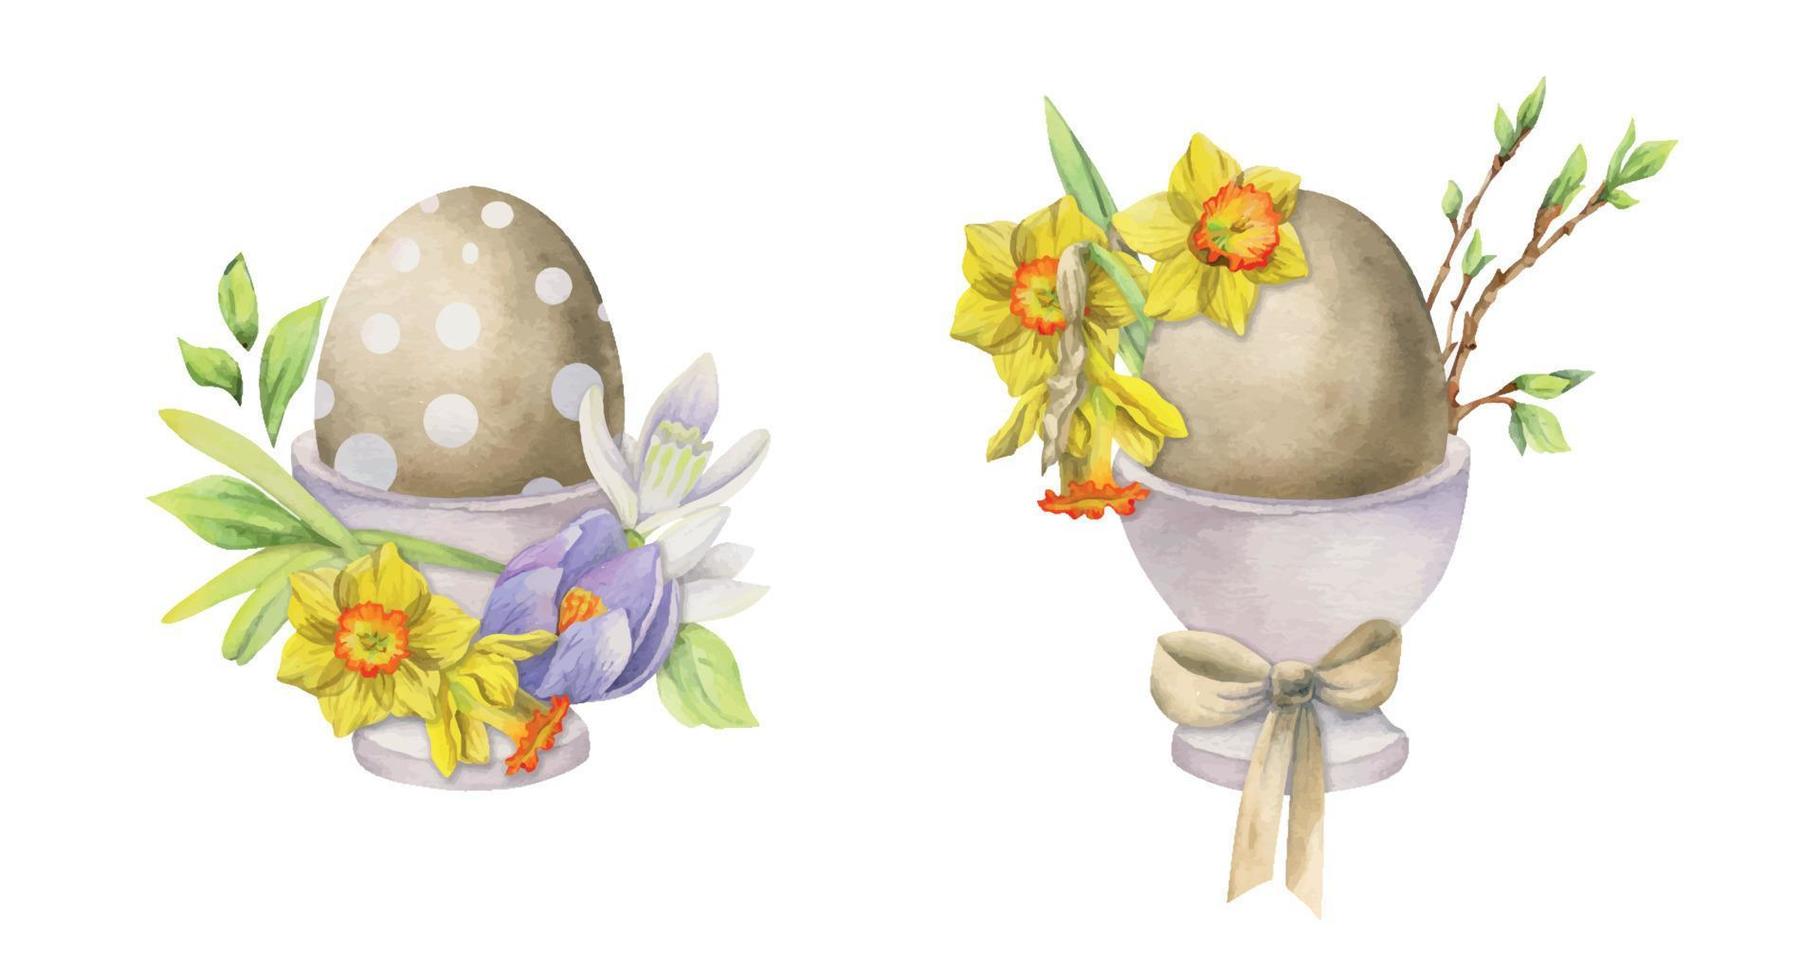 aquarell handgezeichnete osterfeier clipart. Bemalte Eier in Porzellantassen mit Blättern, Blumen, Pastellfarbe isoliert auf weißem Hintergrund. für einladungen, geschenke, grußkarten, druck, textil vektor